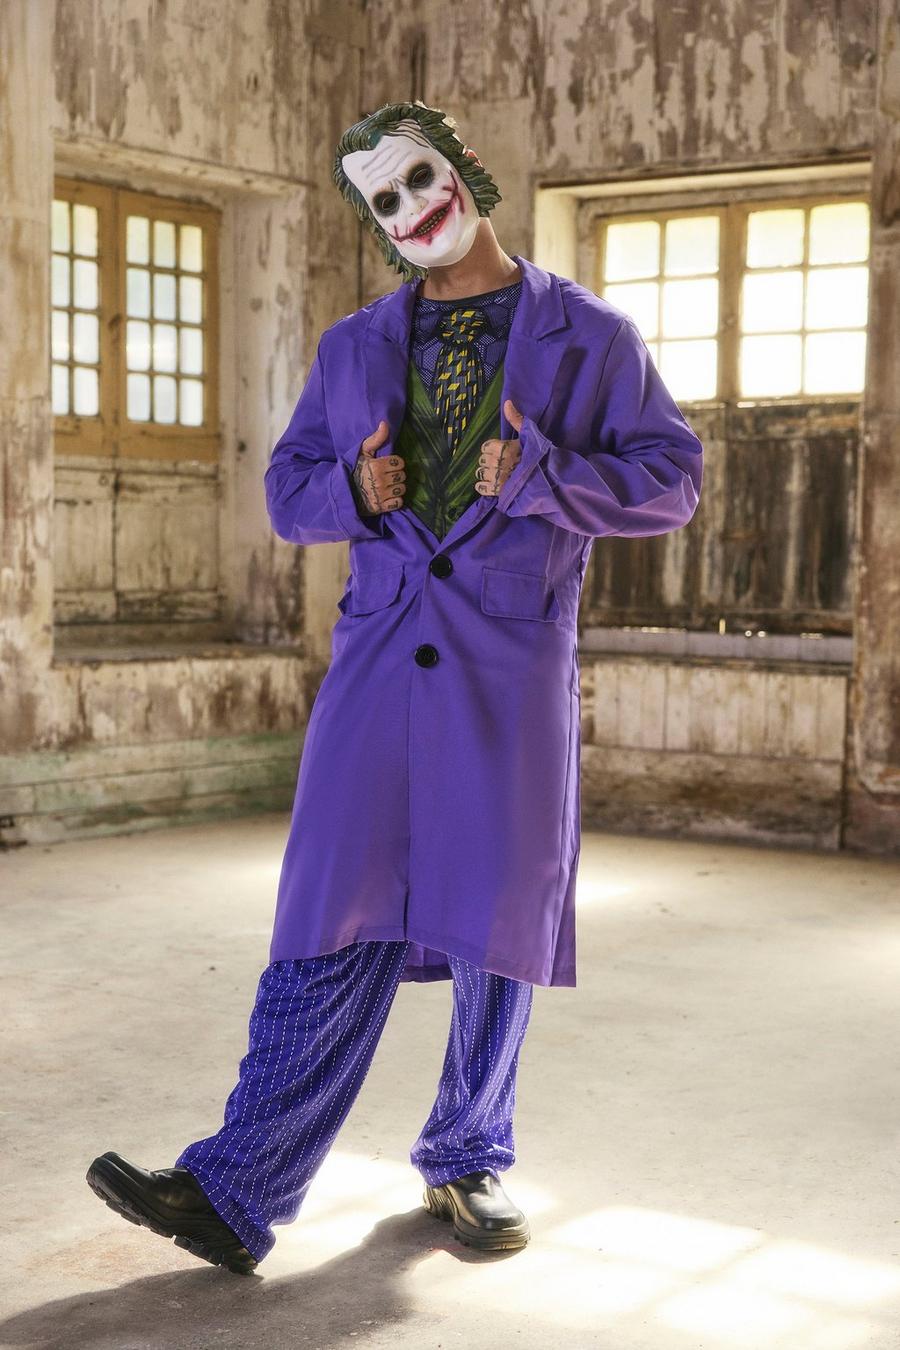 Costume di carnevale di Joker, Purple viola